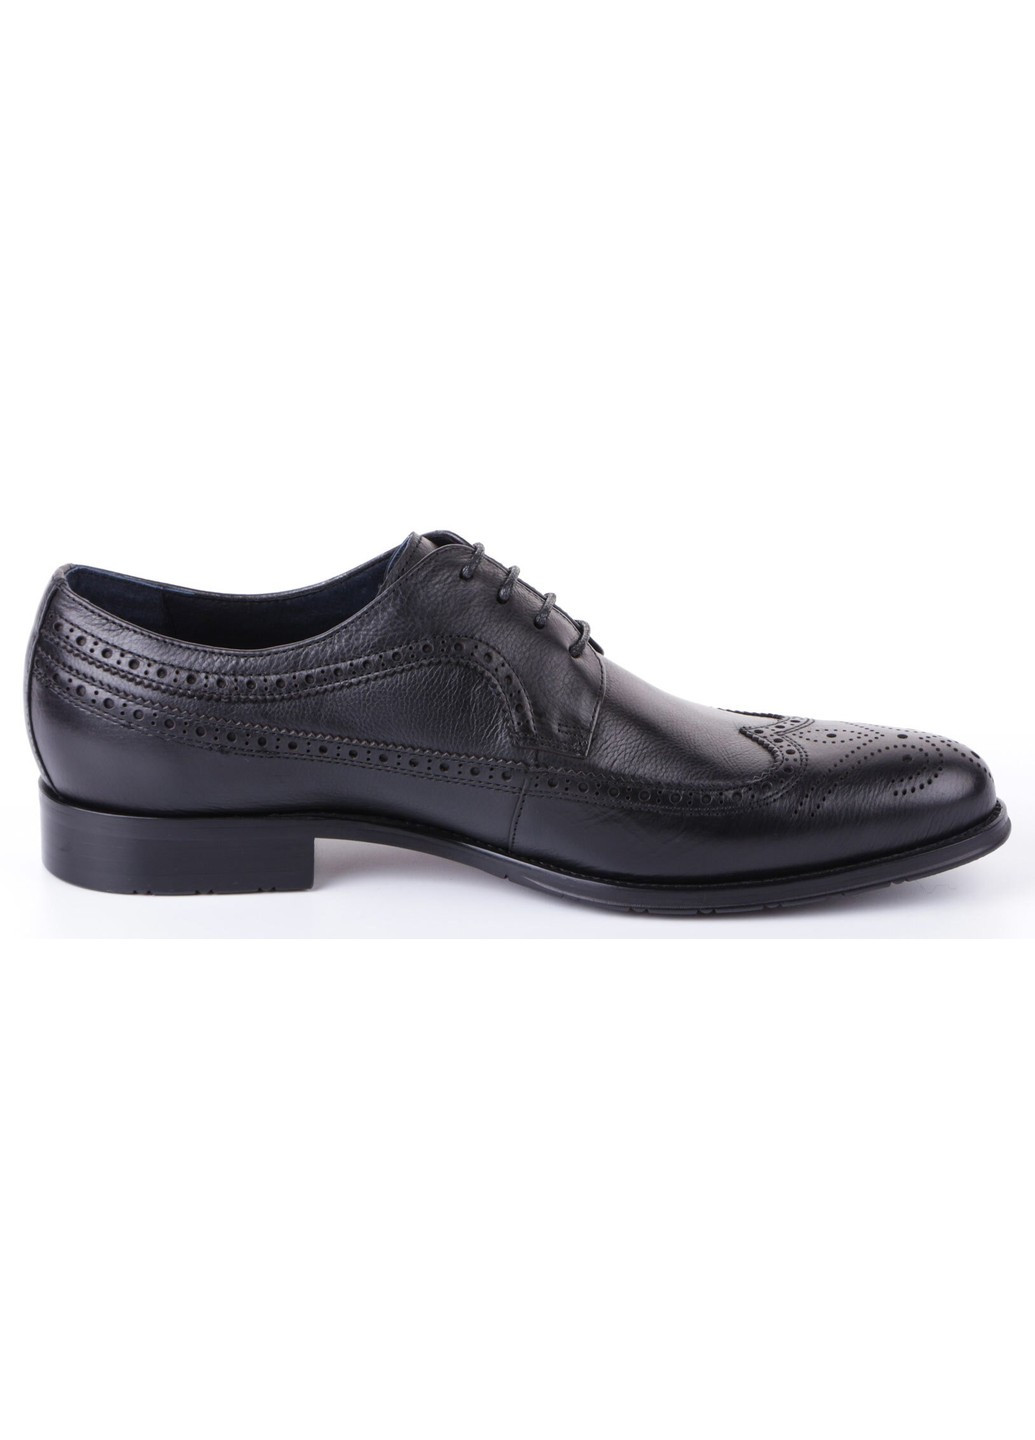 Черные мужские классические туфли 195105 Marco Pinotti на шнурках